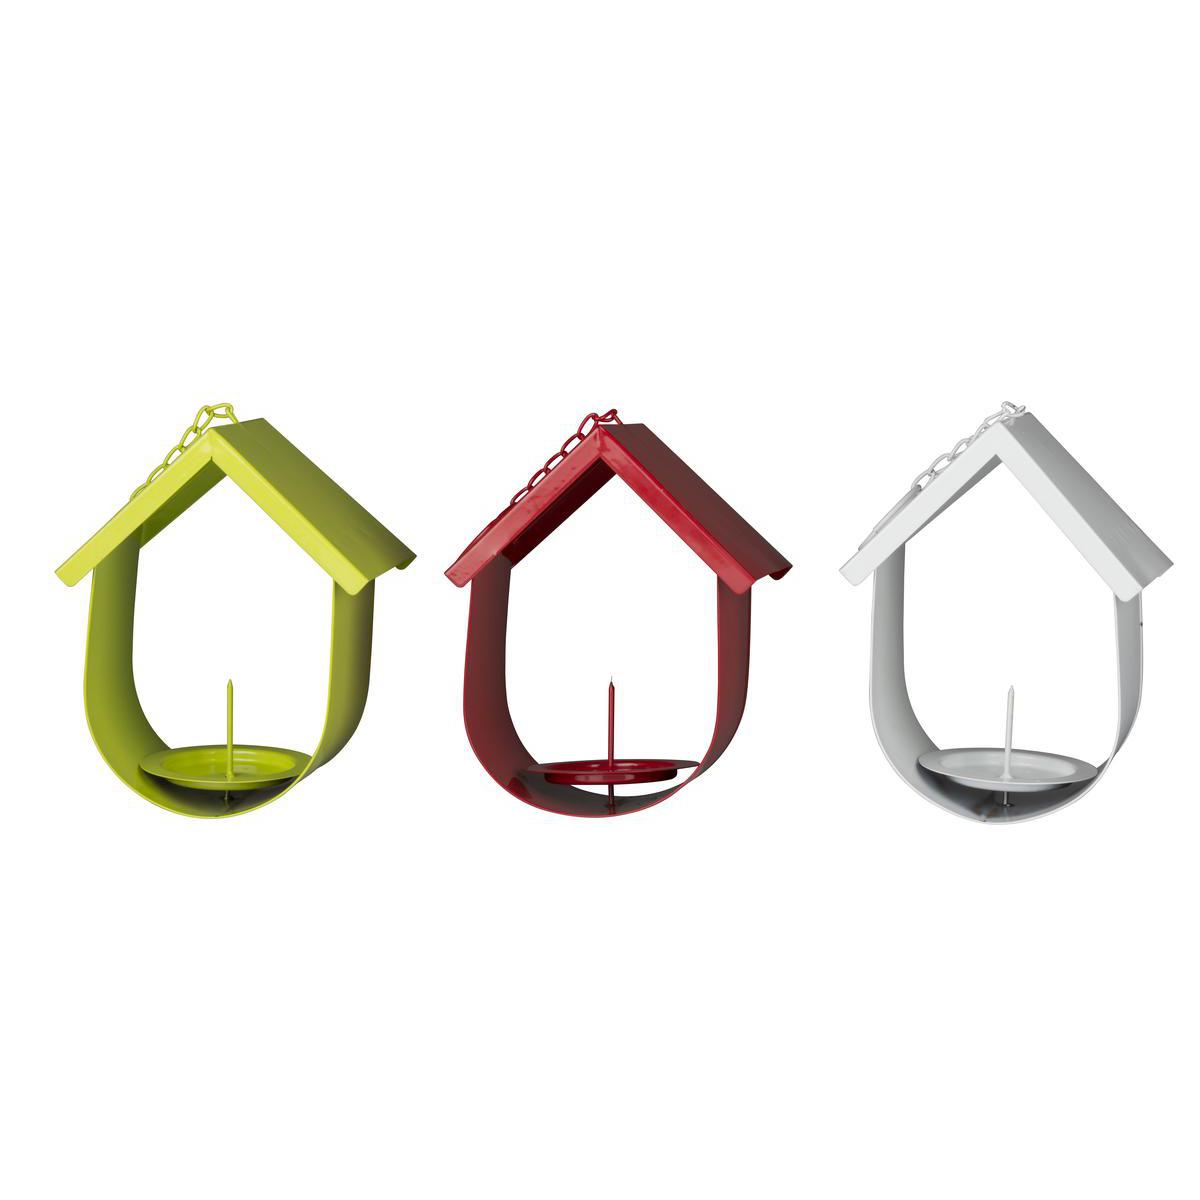 Mangeoire oiseaux maison - Acier - 15,2 x 11,7 x H 19,5 cm - Blanc, rouge ou vert